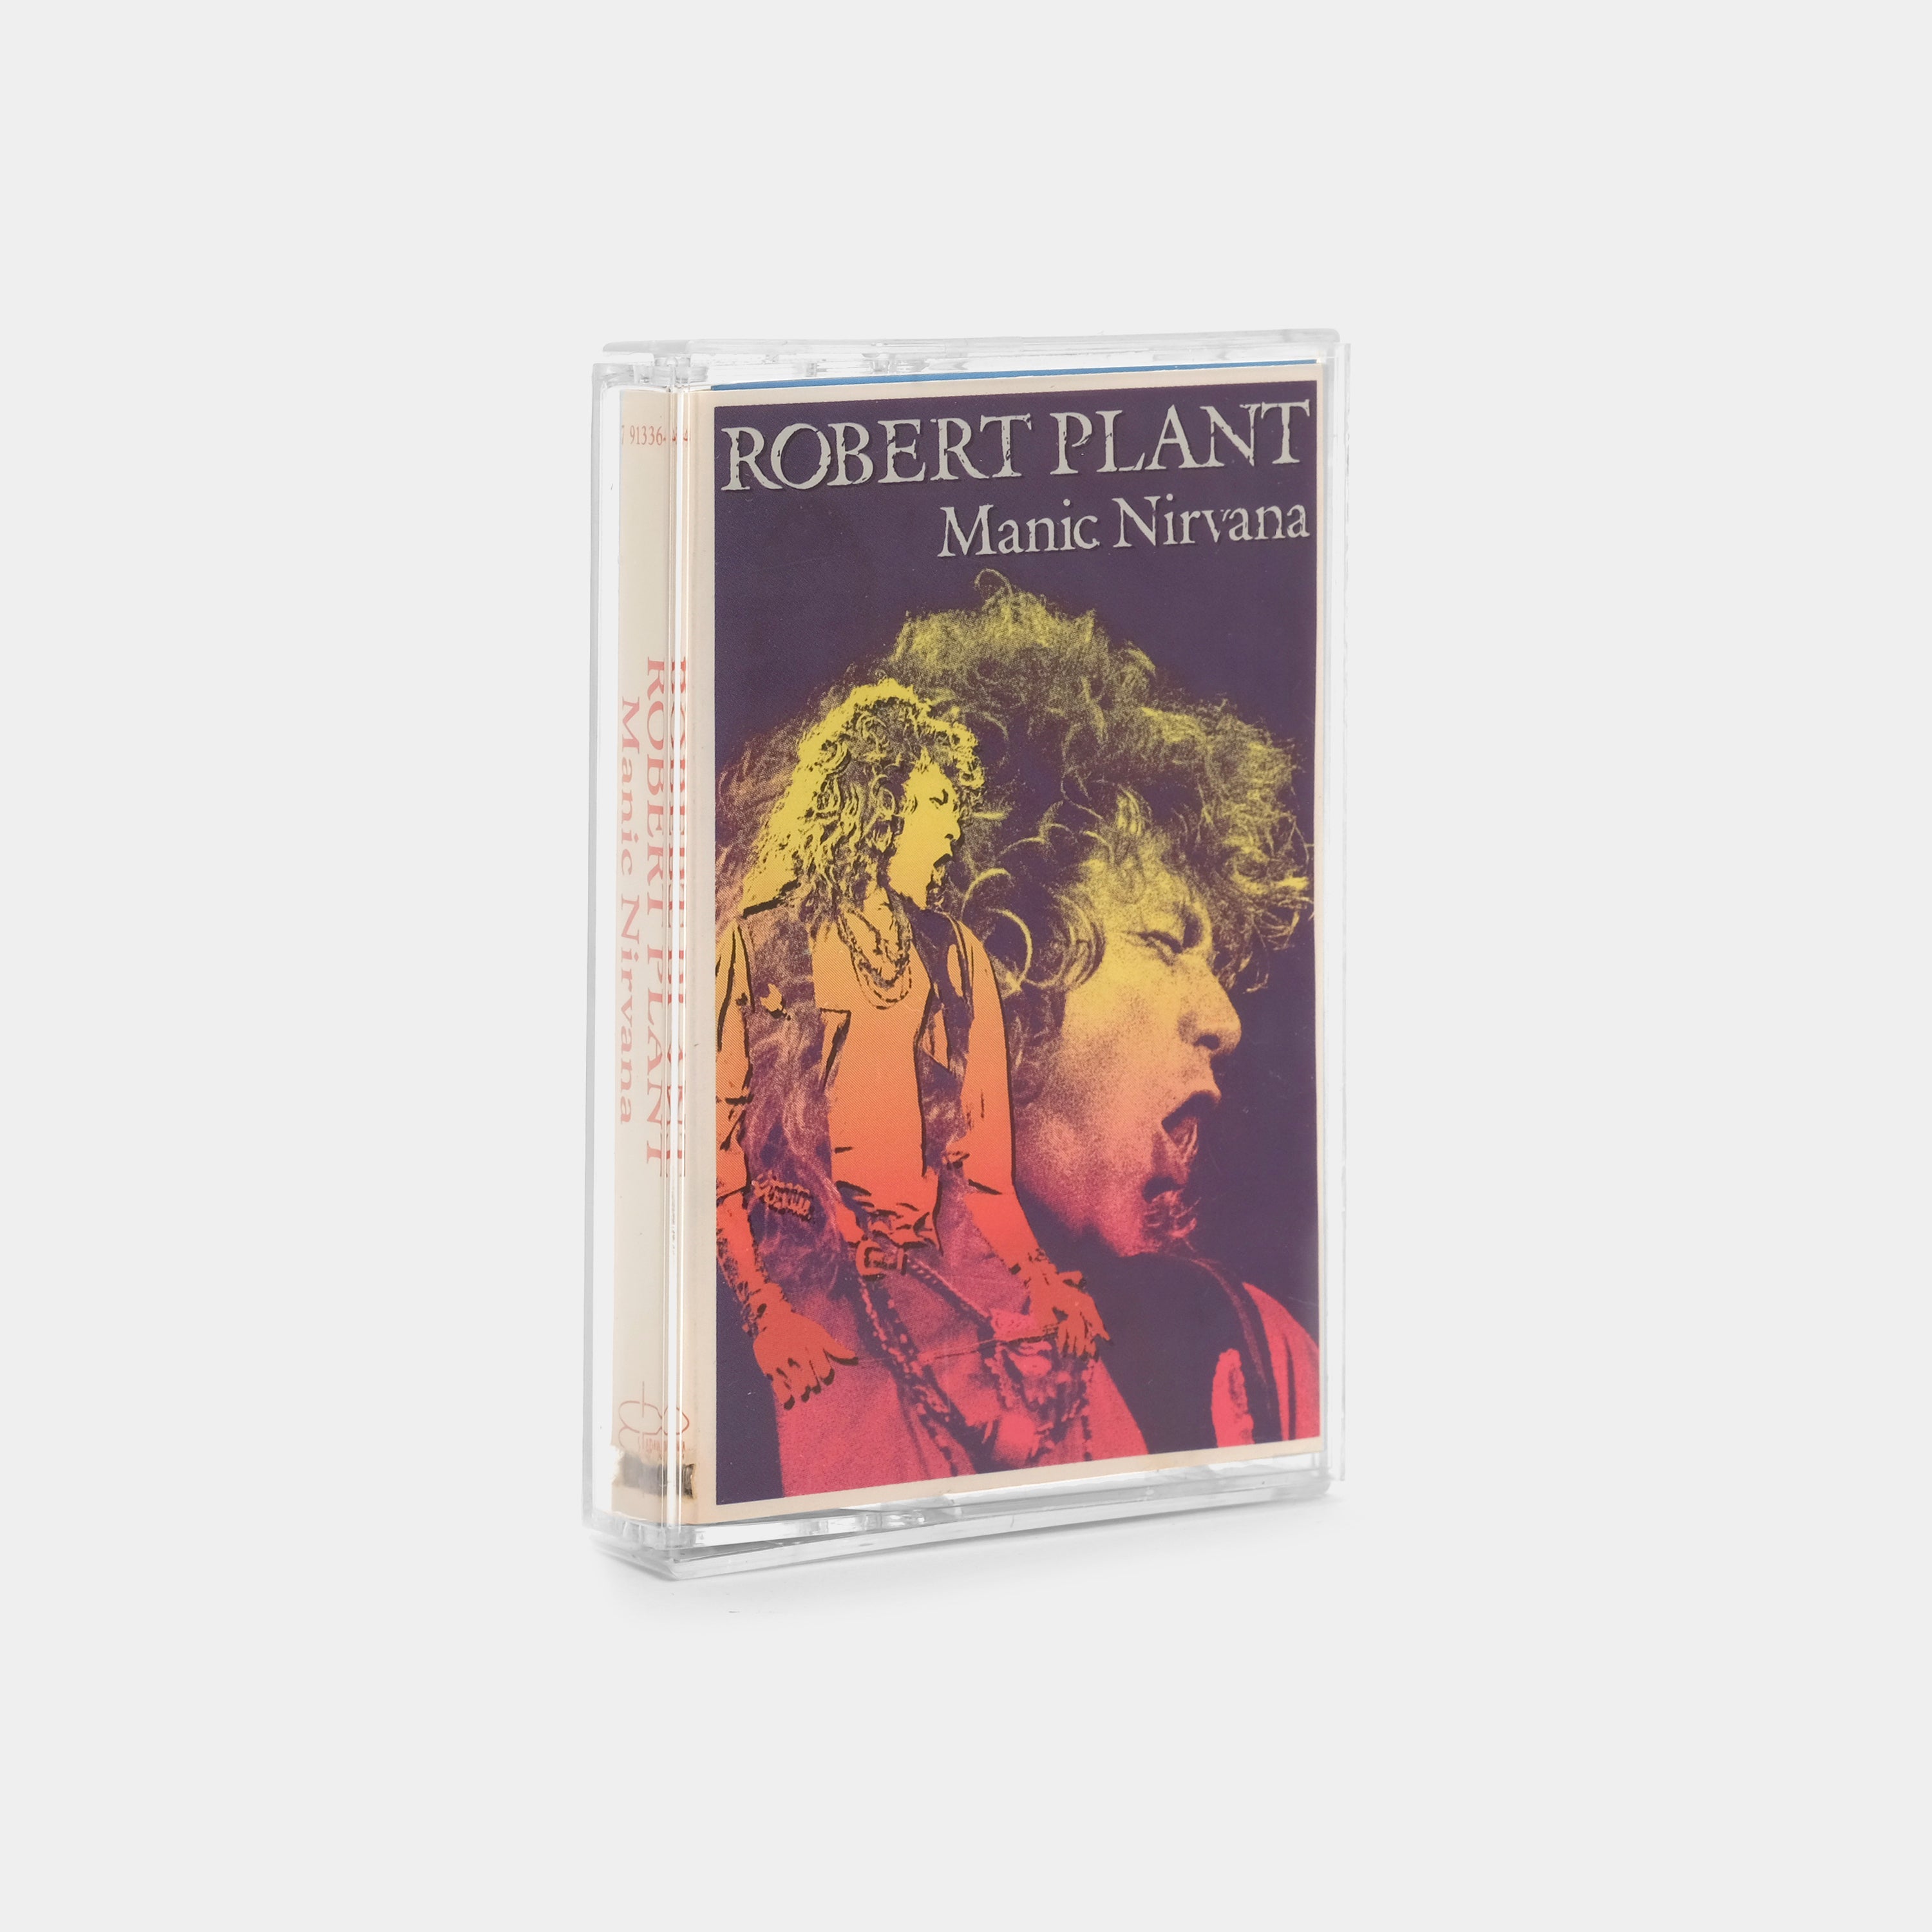 Robert Plant - Manic Nirvana Cassette Tape